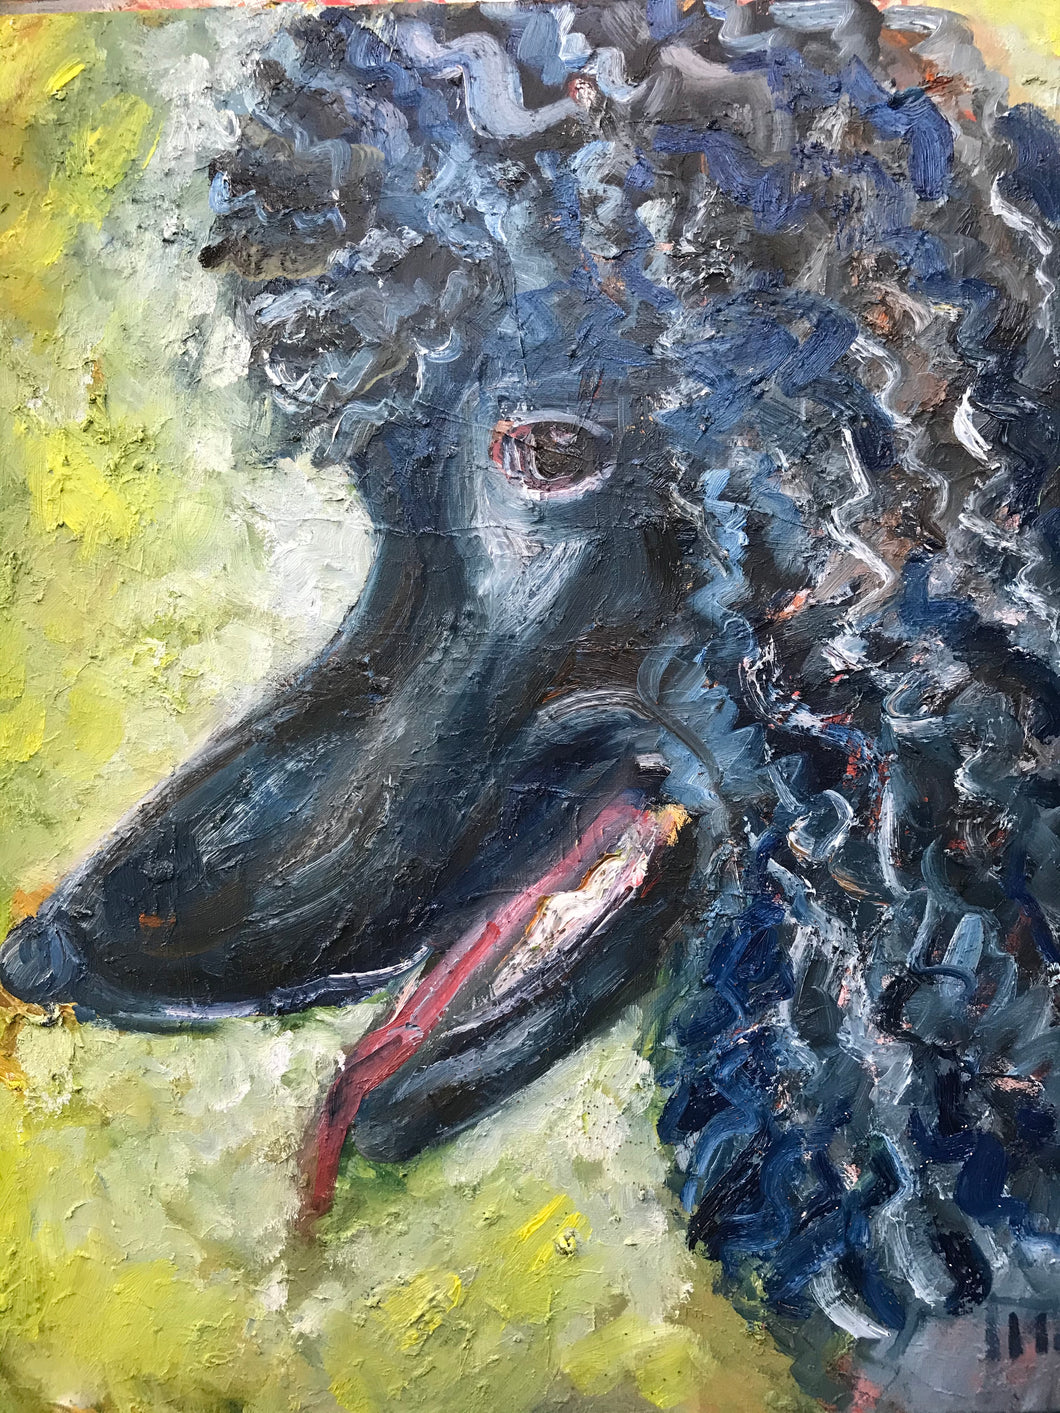 Blue poodle, oil on canvas